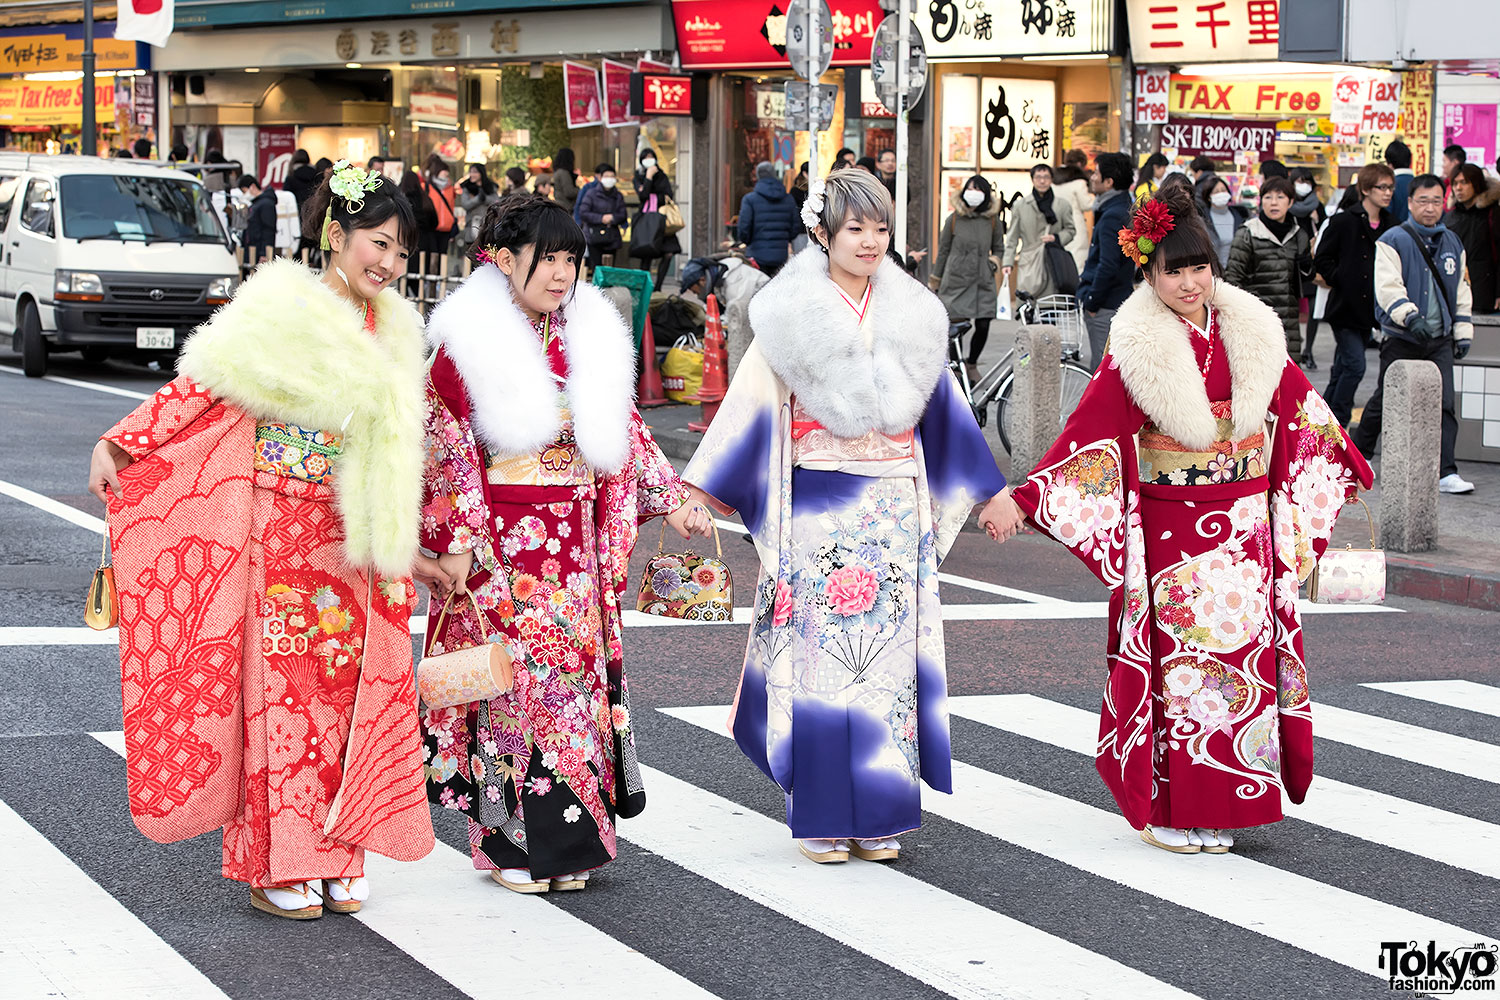 Age of japan. День совершеннолетия в Японии. Япония 2015 год. Праздник в японском стиле. Сэйдзин но Хи день совершеннолетия.